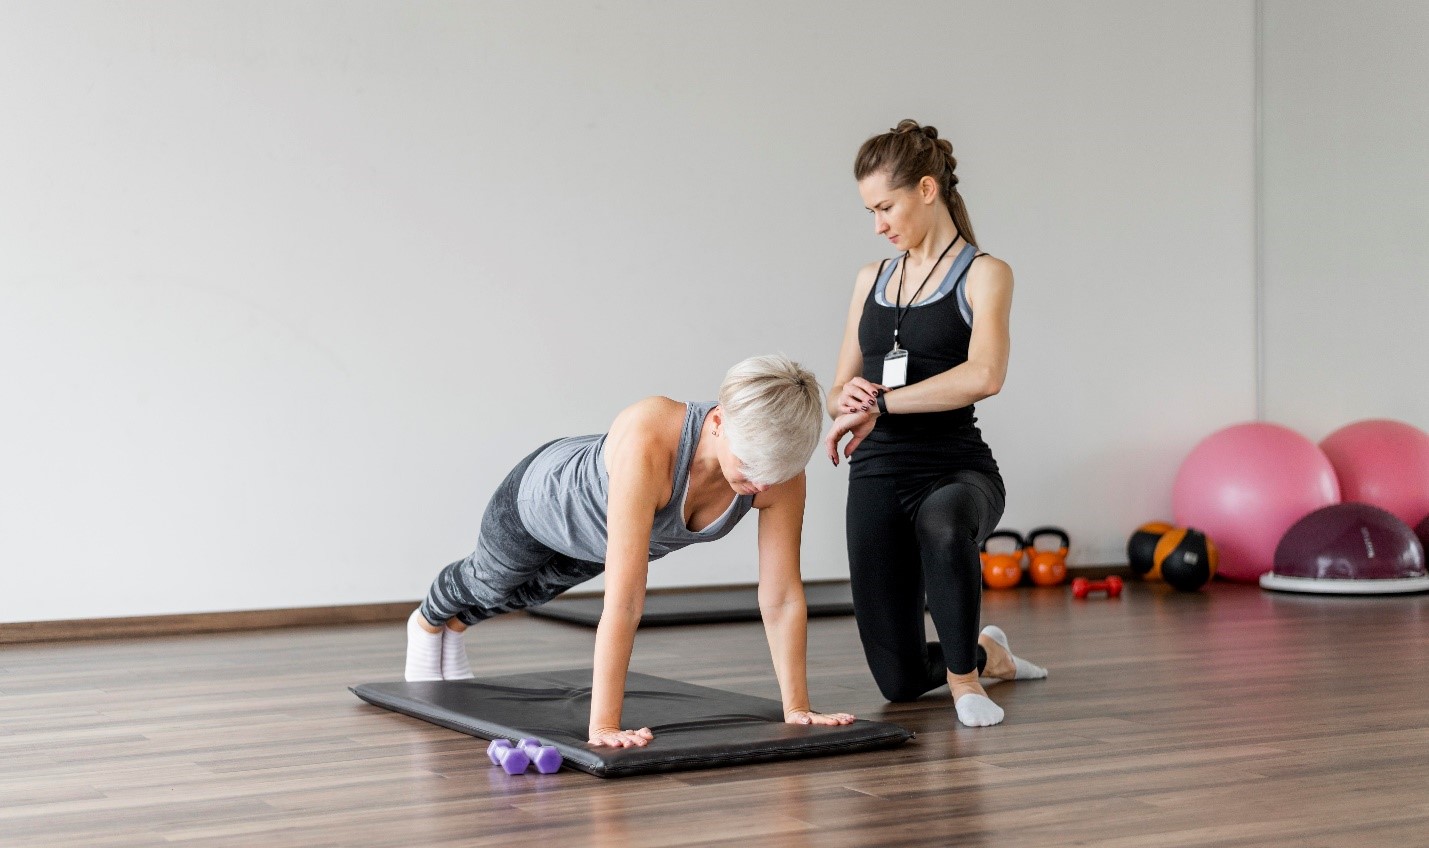 Strength training for women over 40